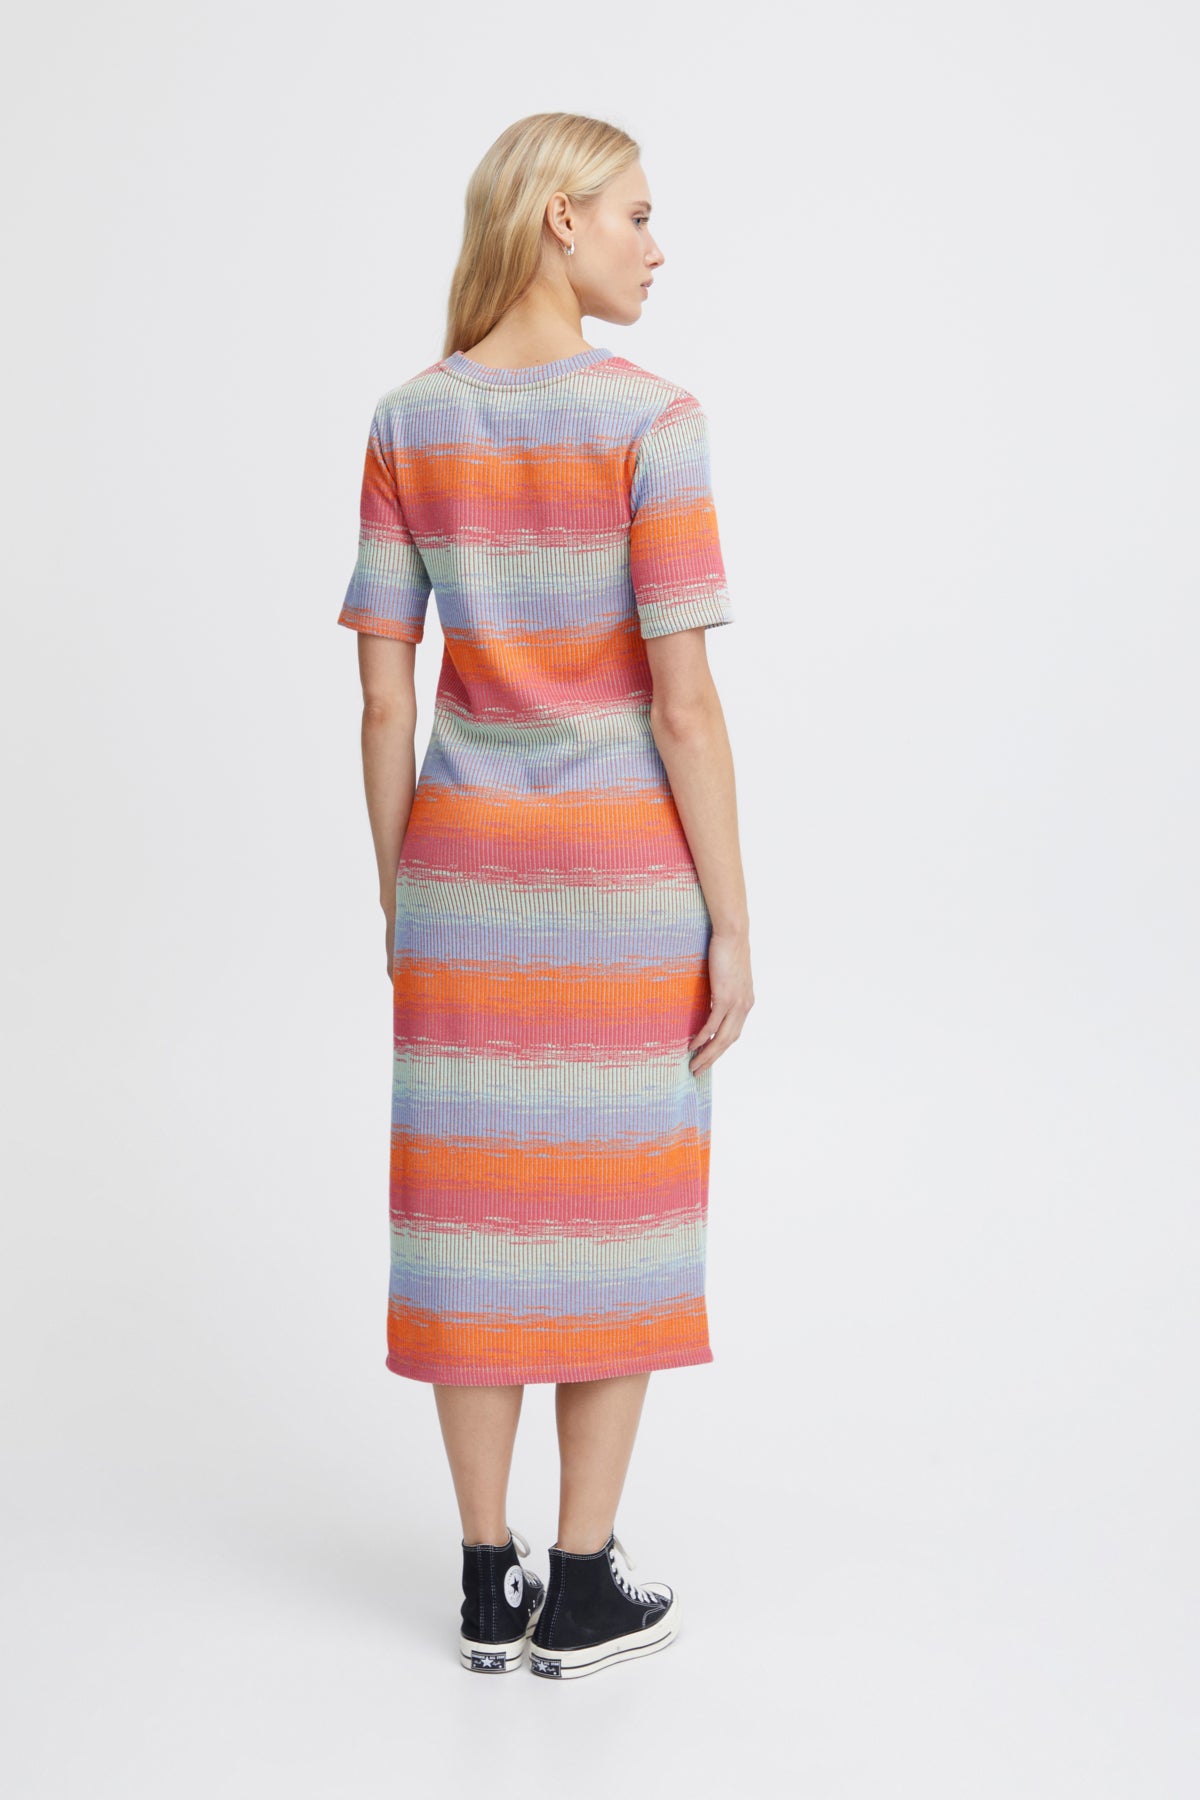 Odela Dress in Multi Colour